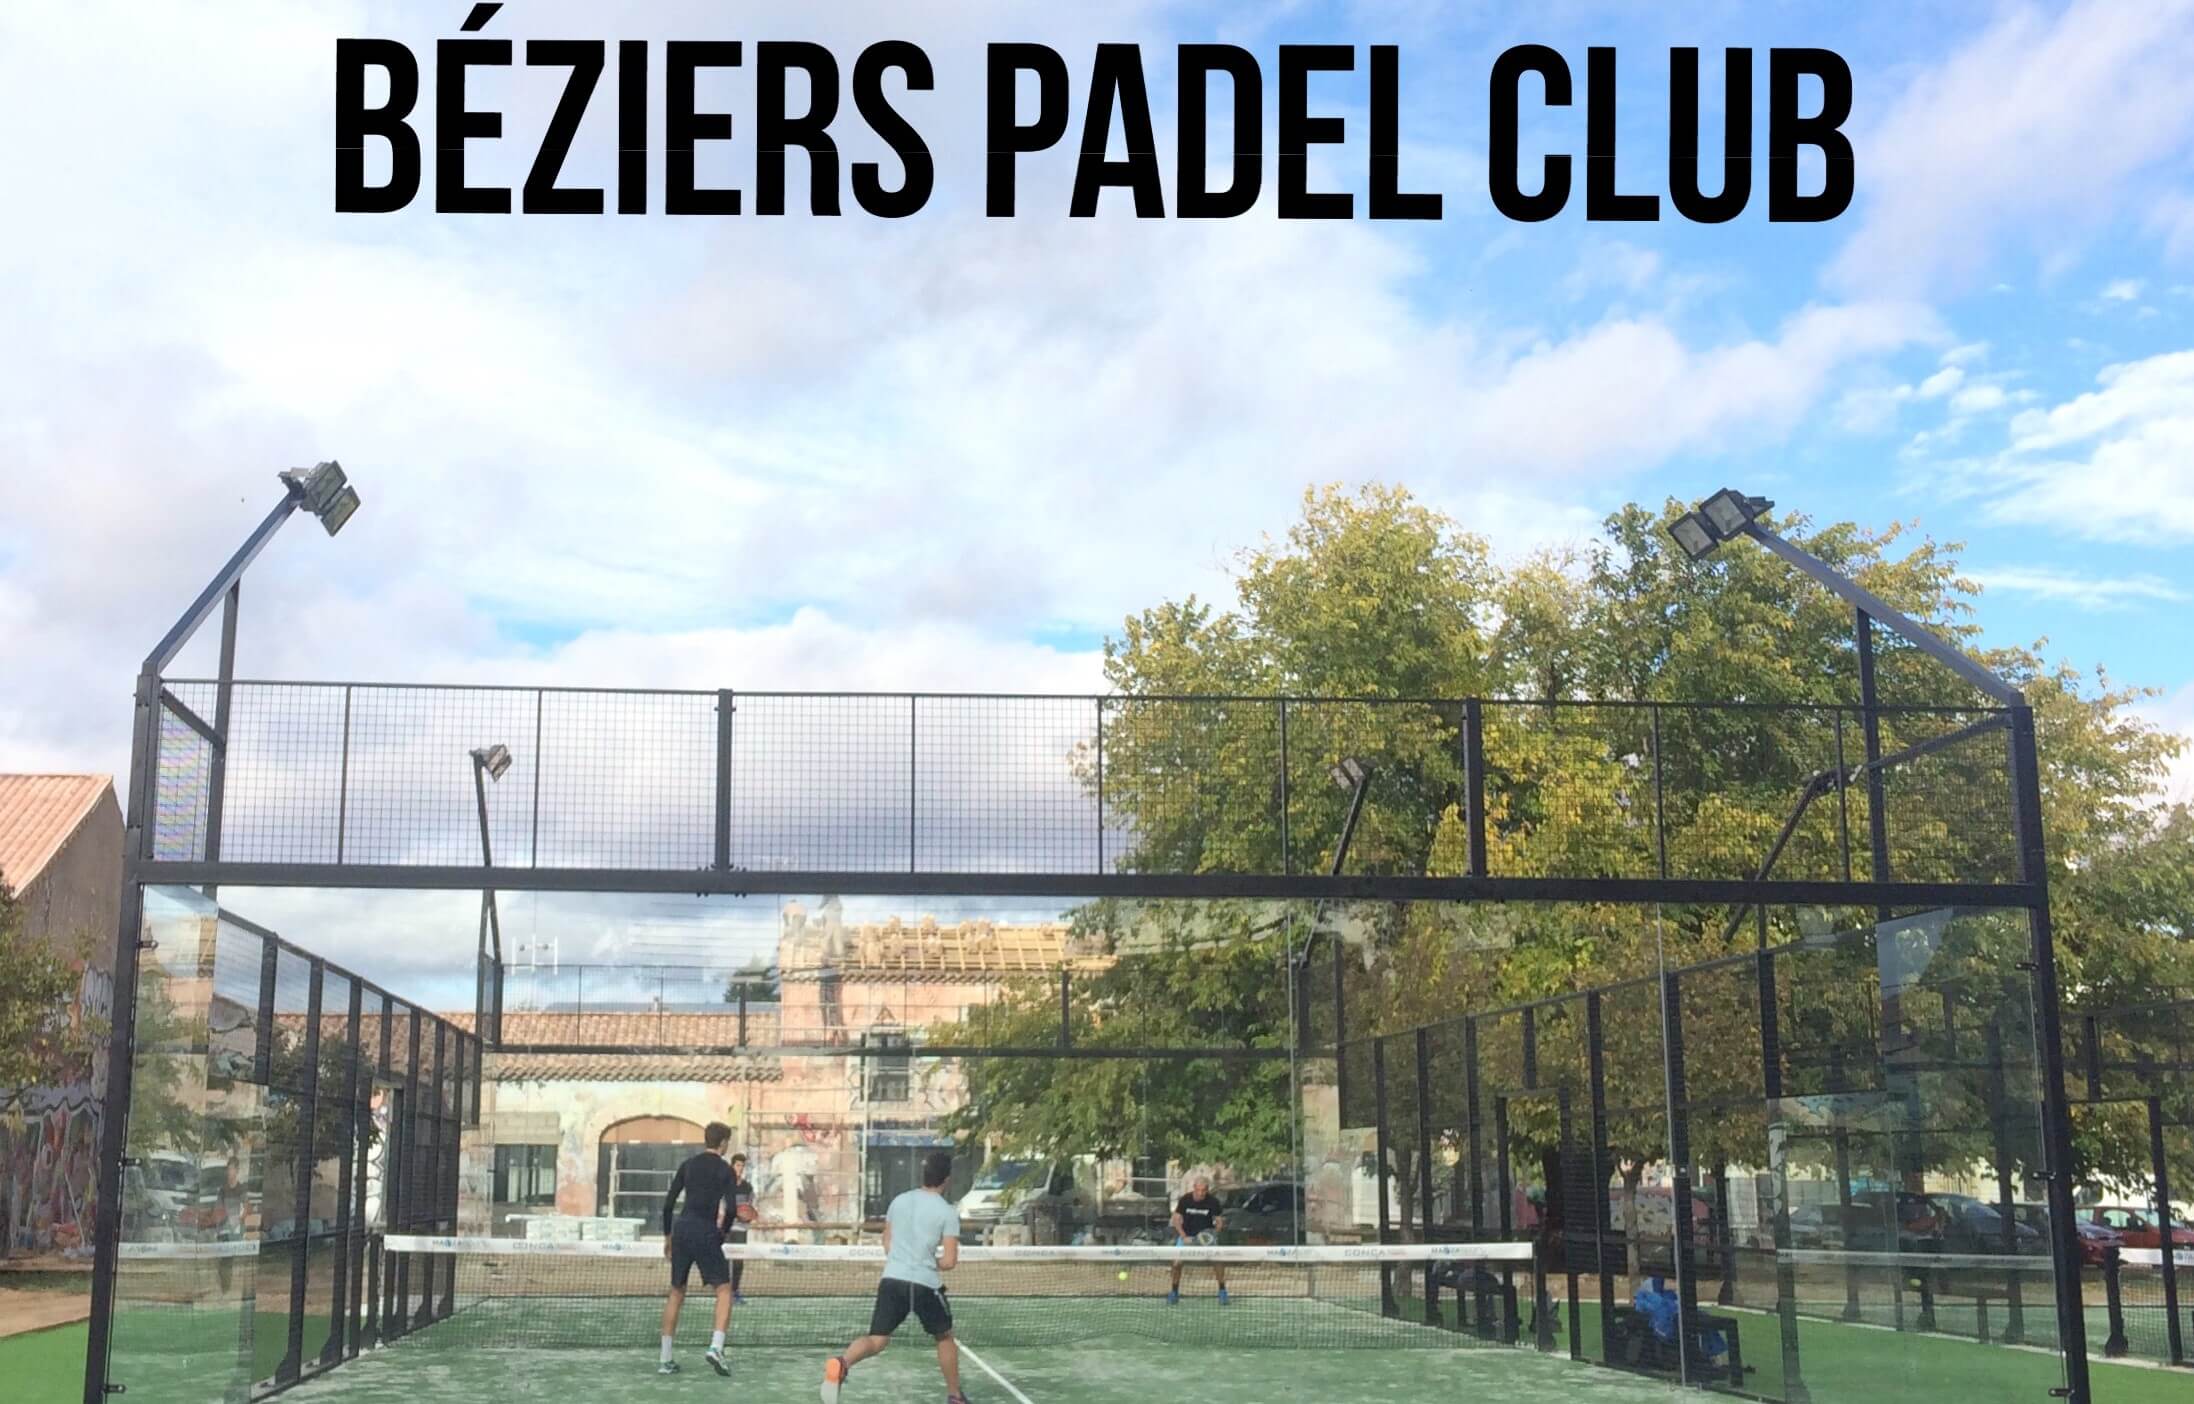 Bereit für Turniere in Béziers Padel Club?